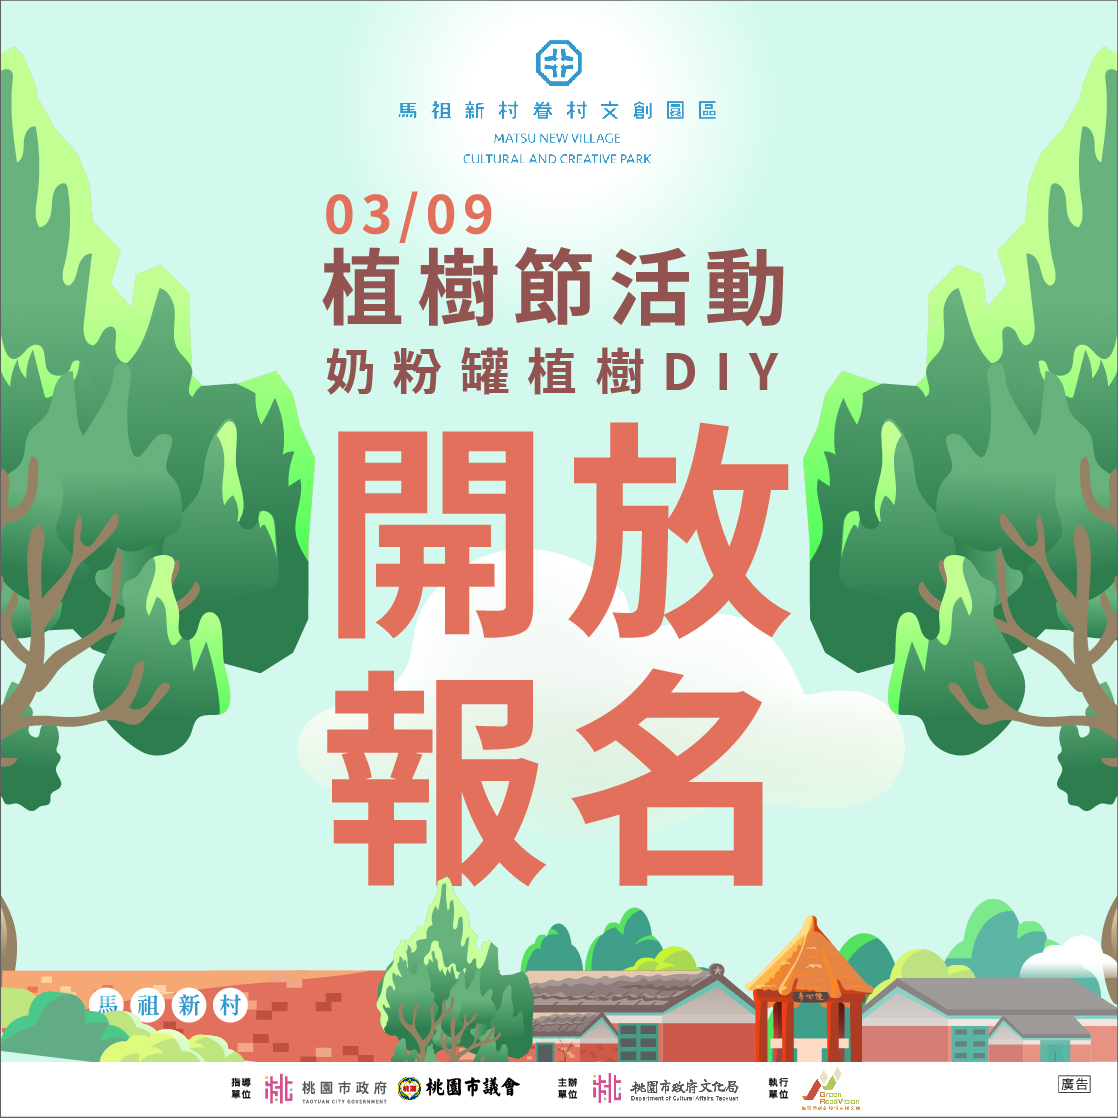 馬村節慶活動_奶粉罐植樹DIY 開放報名